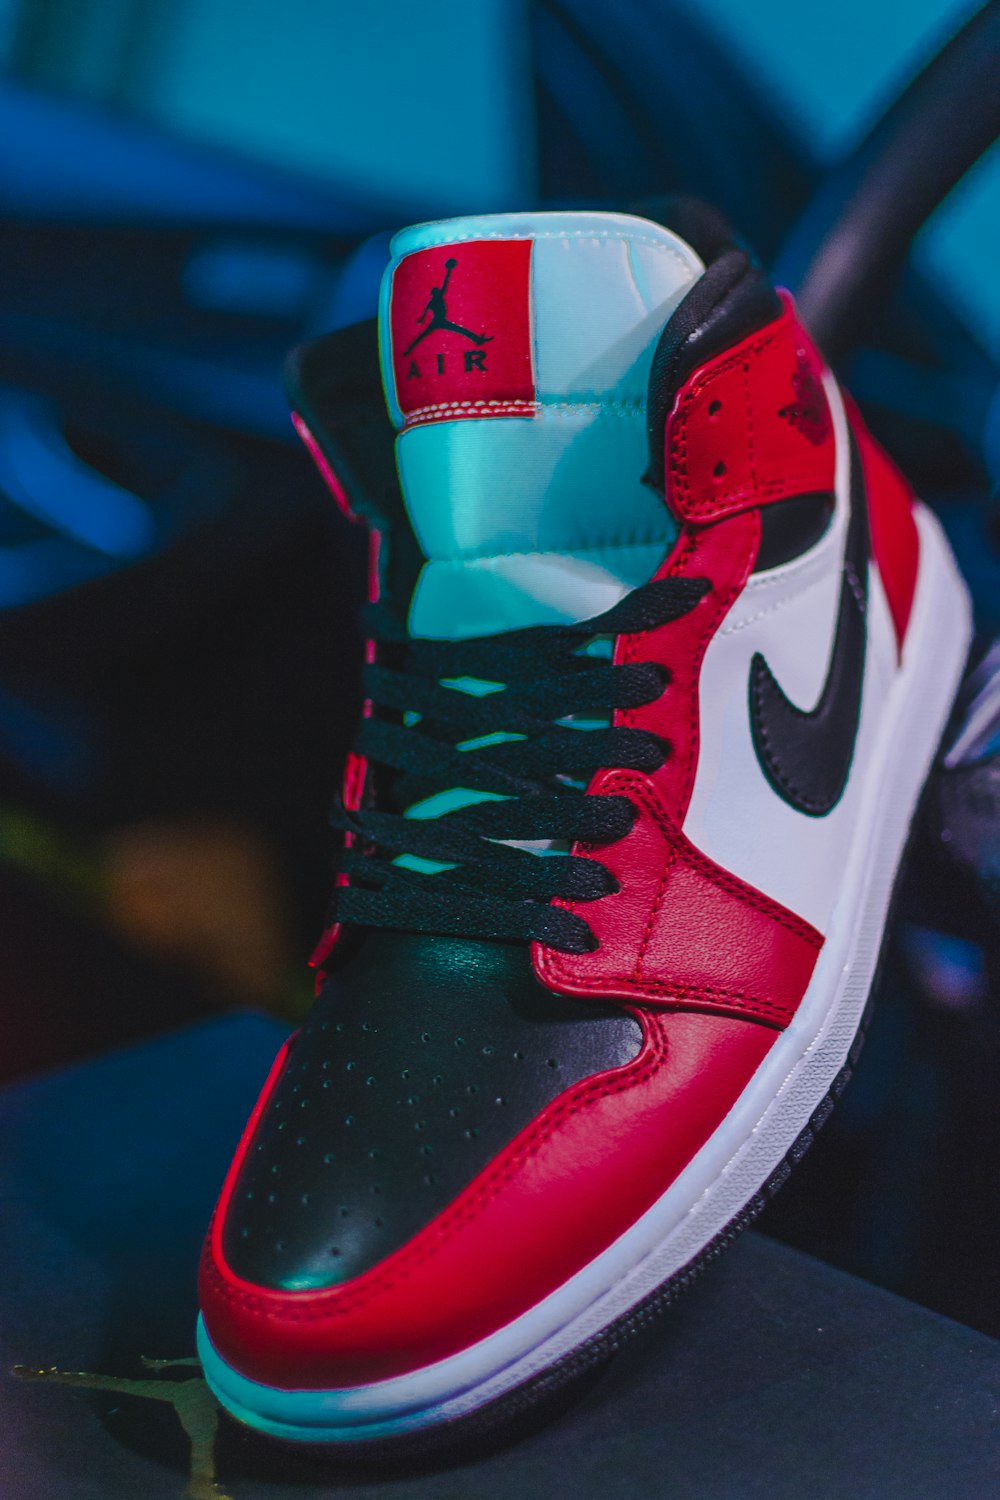 red and black nike basketball shoe photo – Free Image on Unsplash